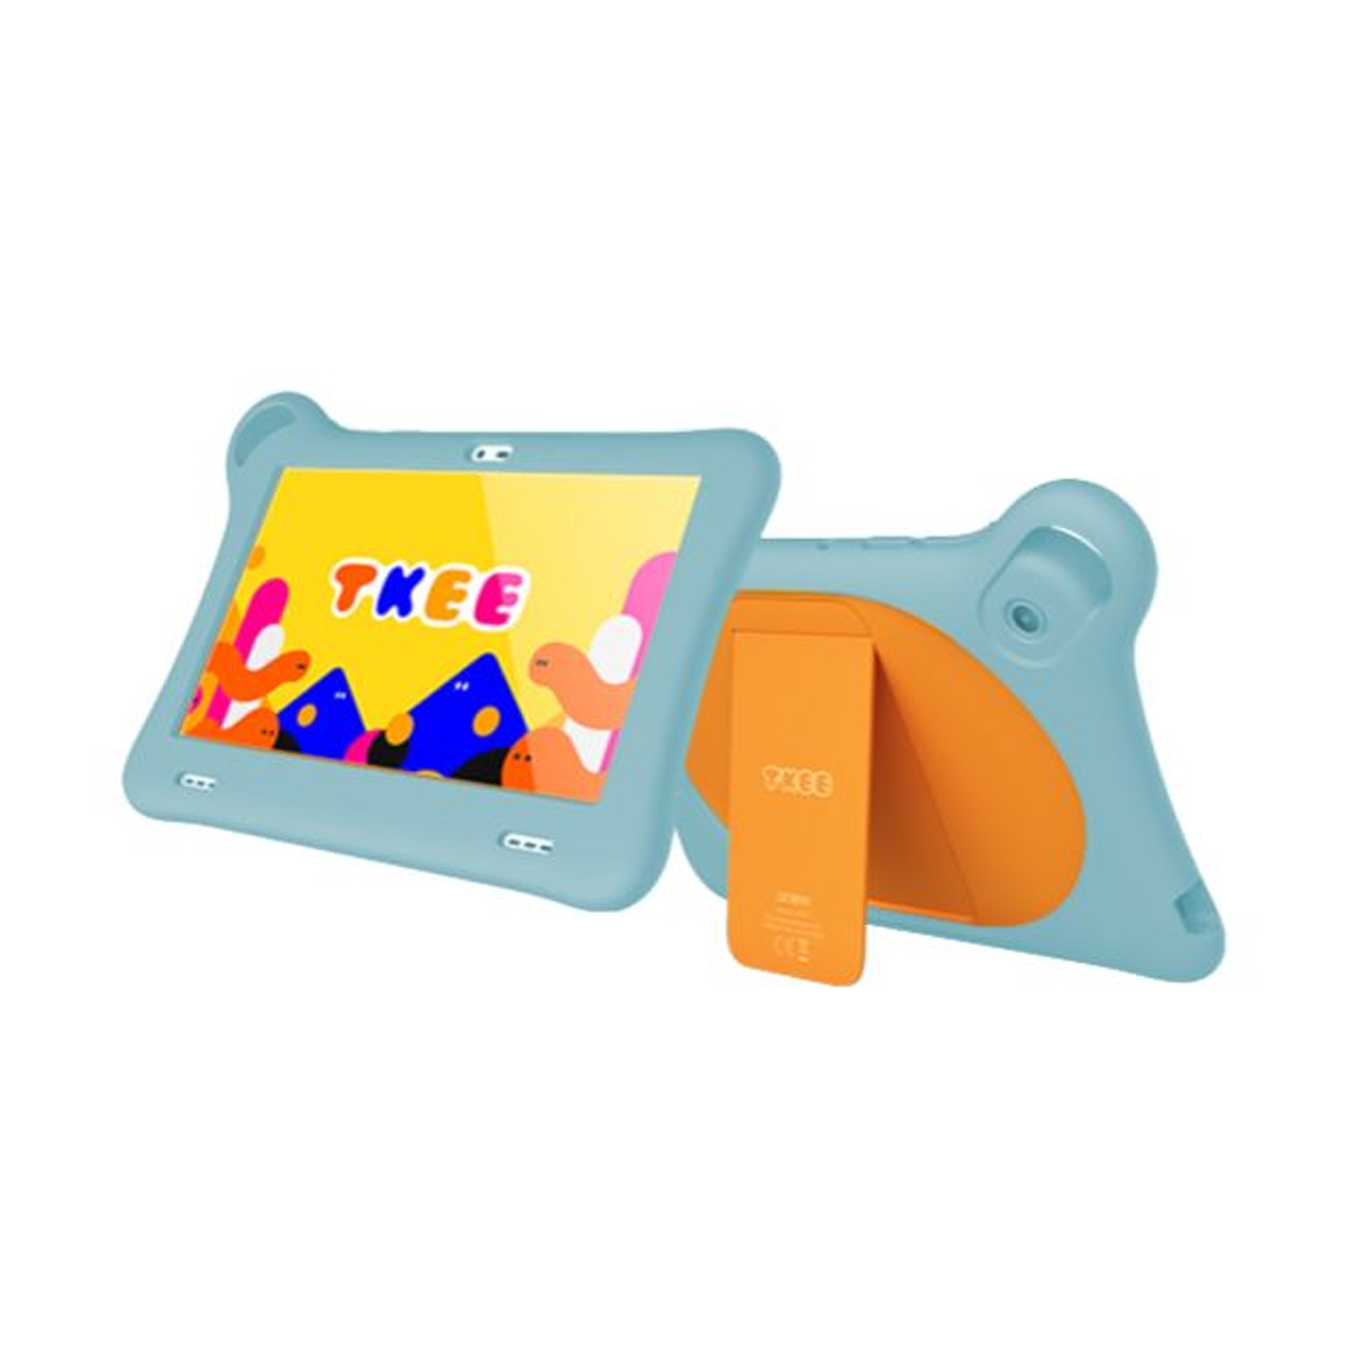 Tablet Kids de 7" Wi-Fi 1+32GB ORANGE-LHT BLUE AL-TAB-9317G-OLBLU Marca: Alcatel